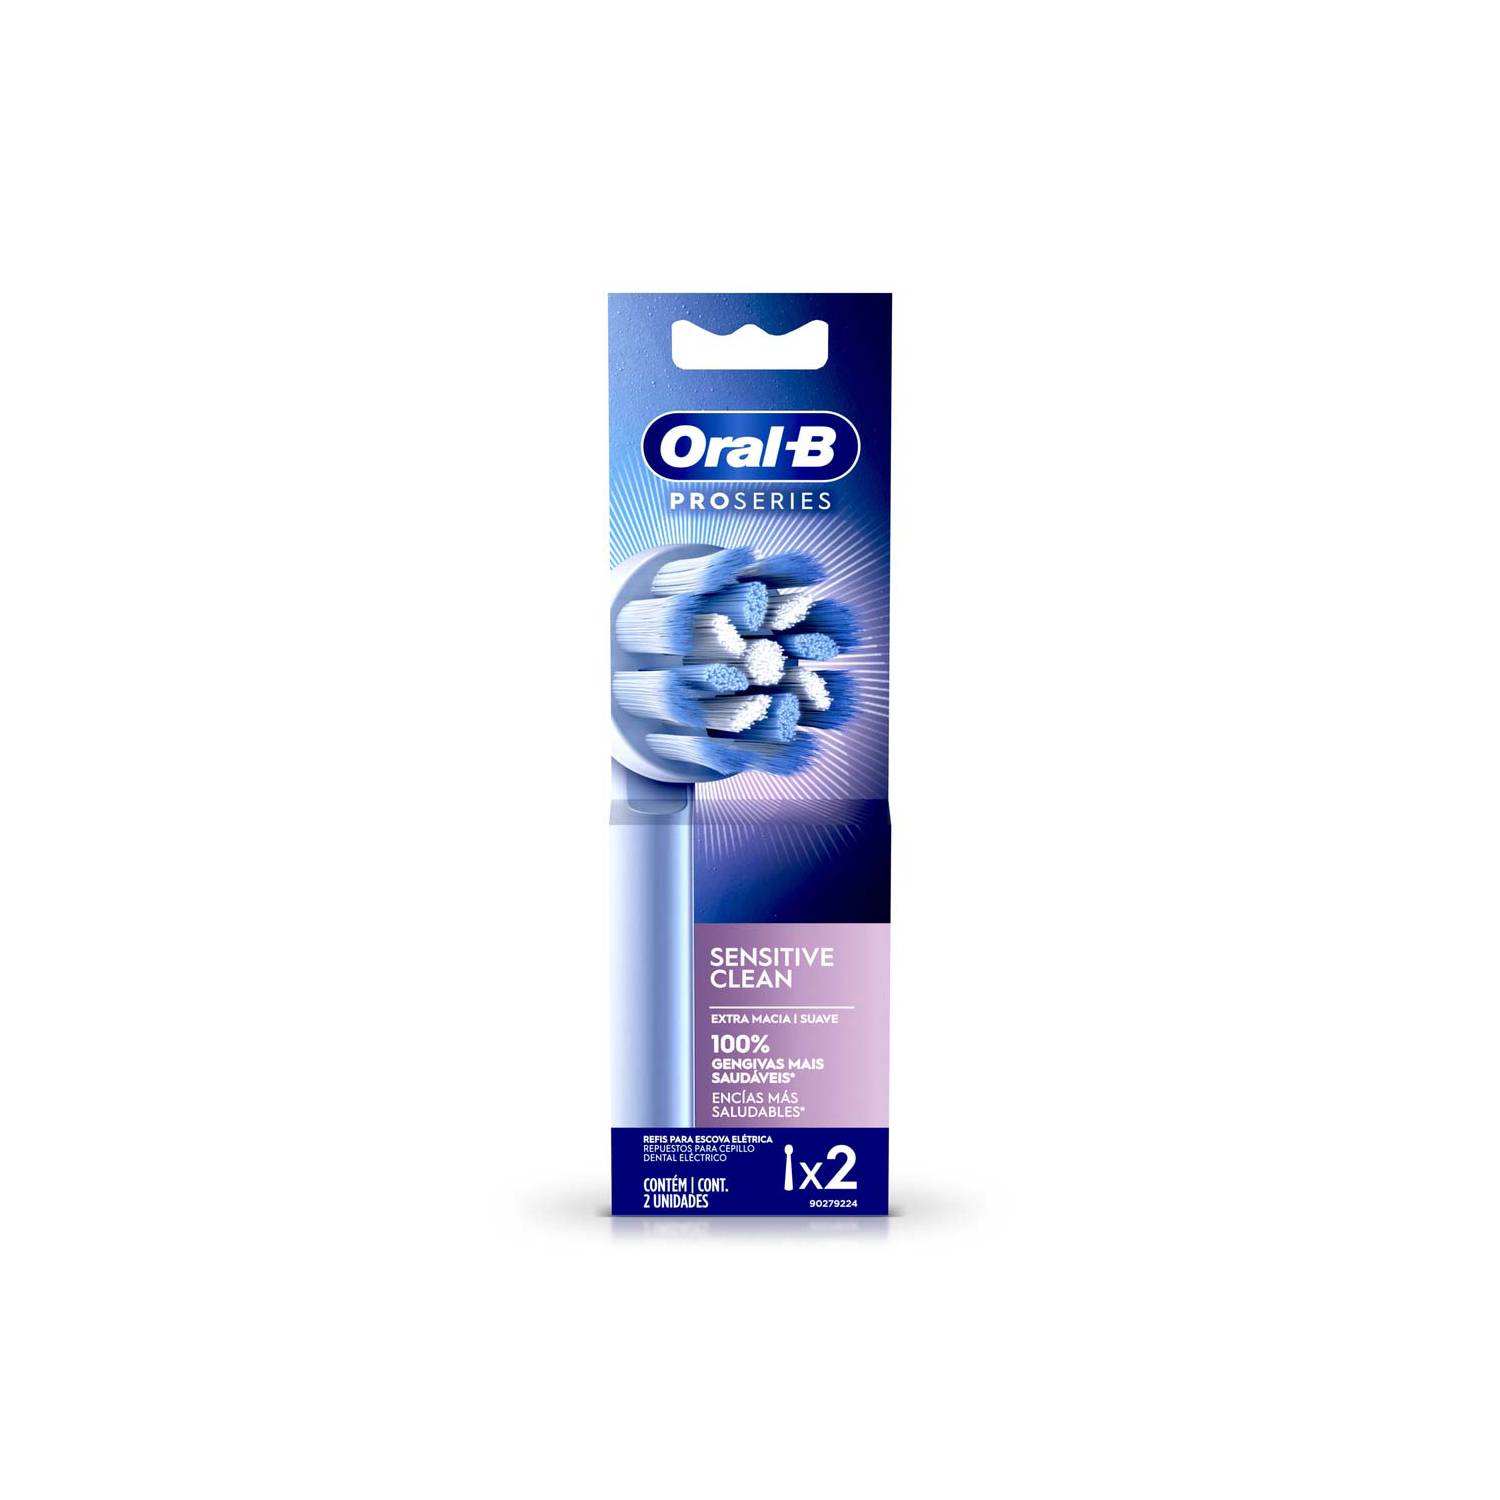 Repuesto Cepillo Dental Electrico Oral-b Ultrafino X 2und ORAL B